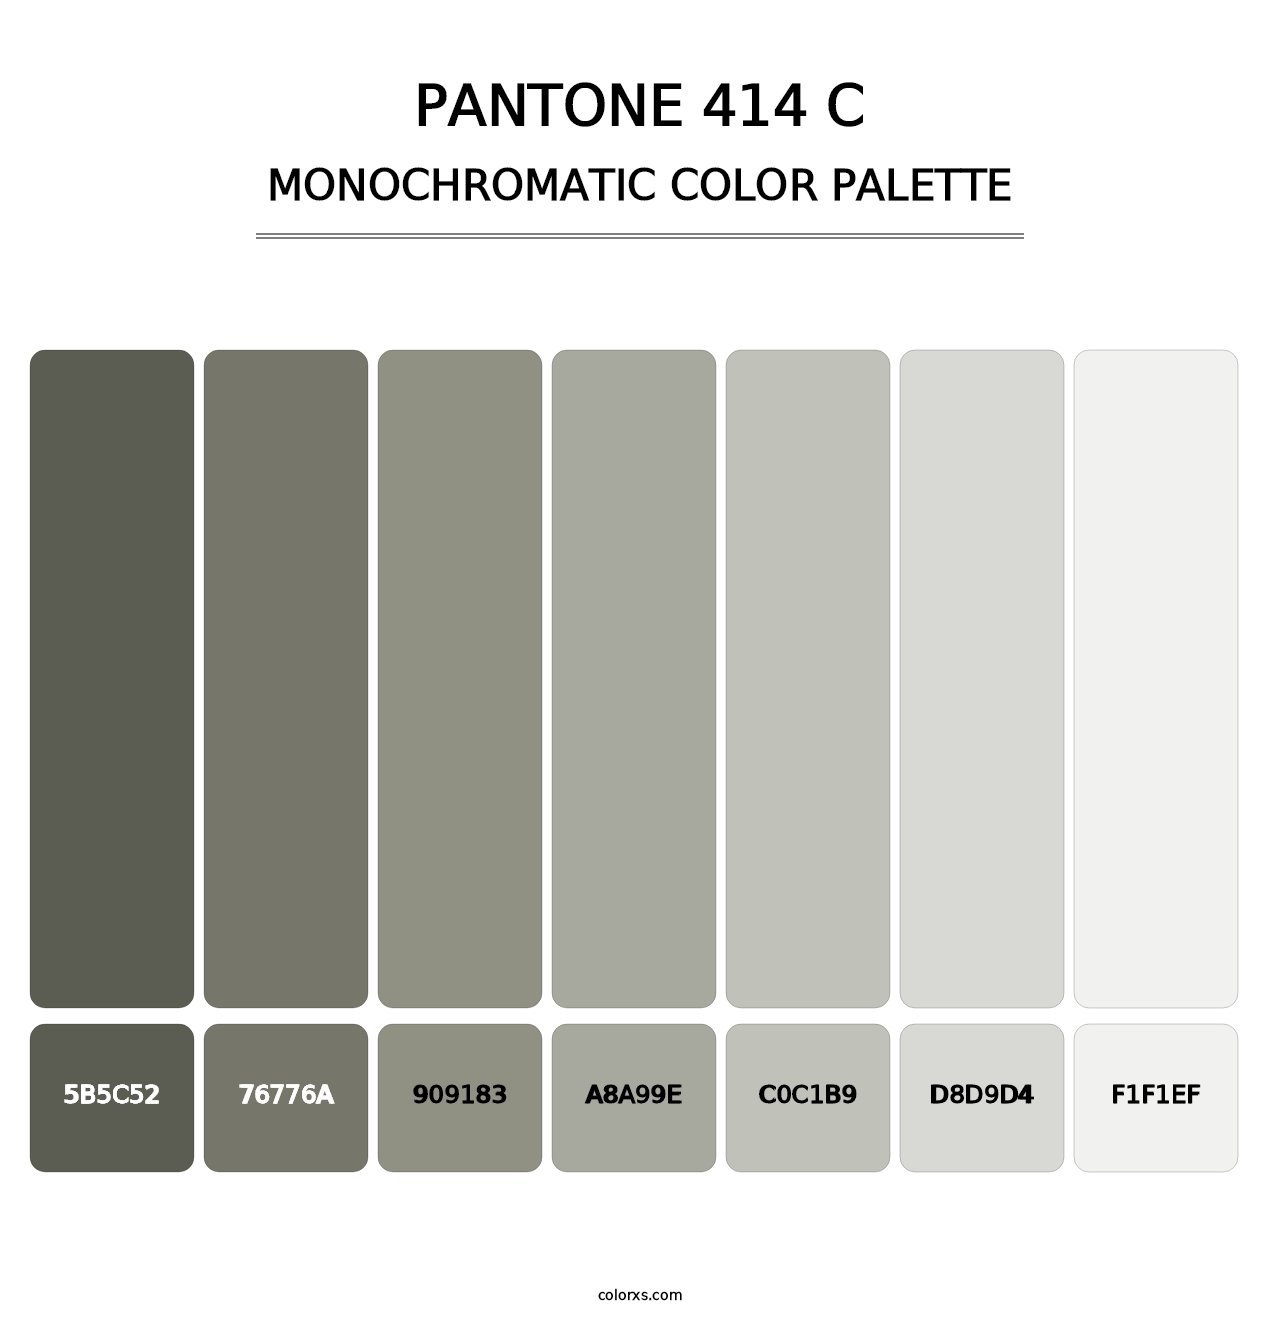 PANTONE 414 C - Monochromatic Color Palette